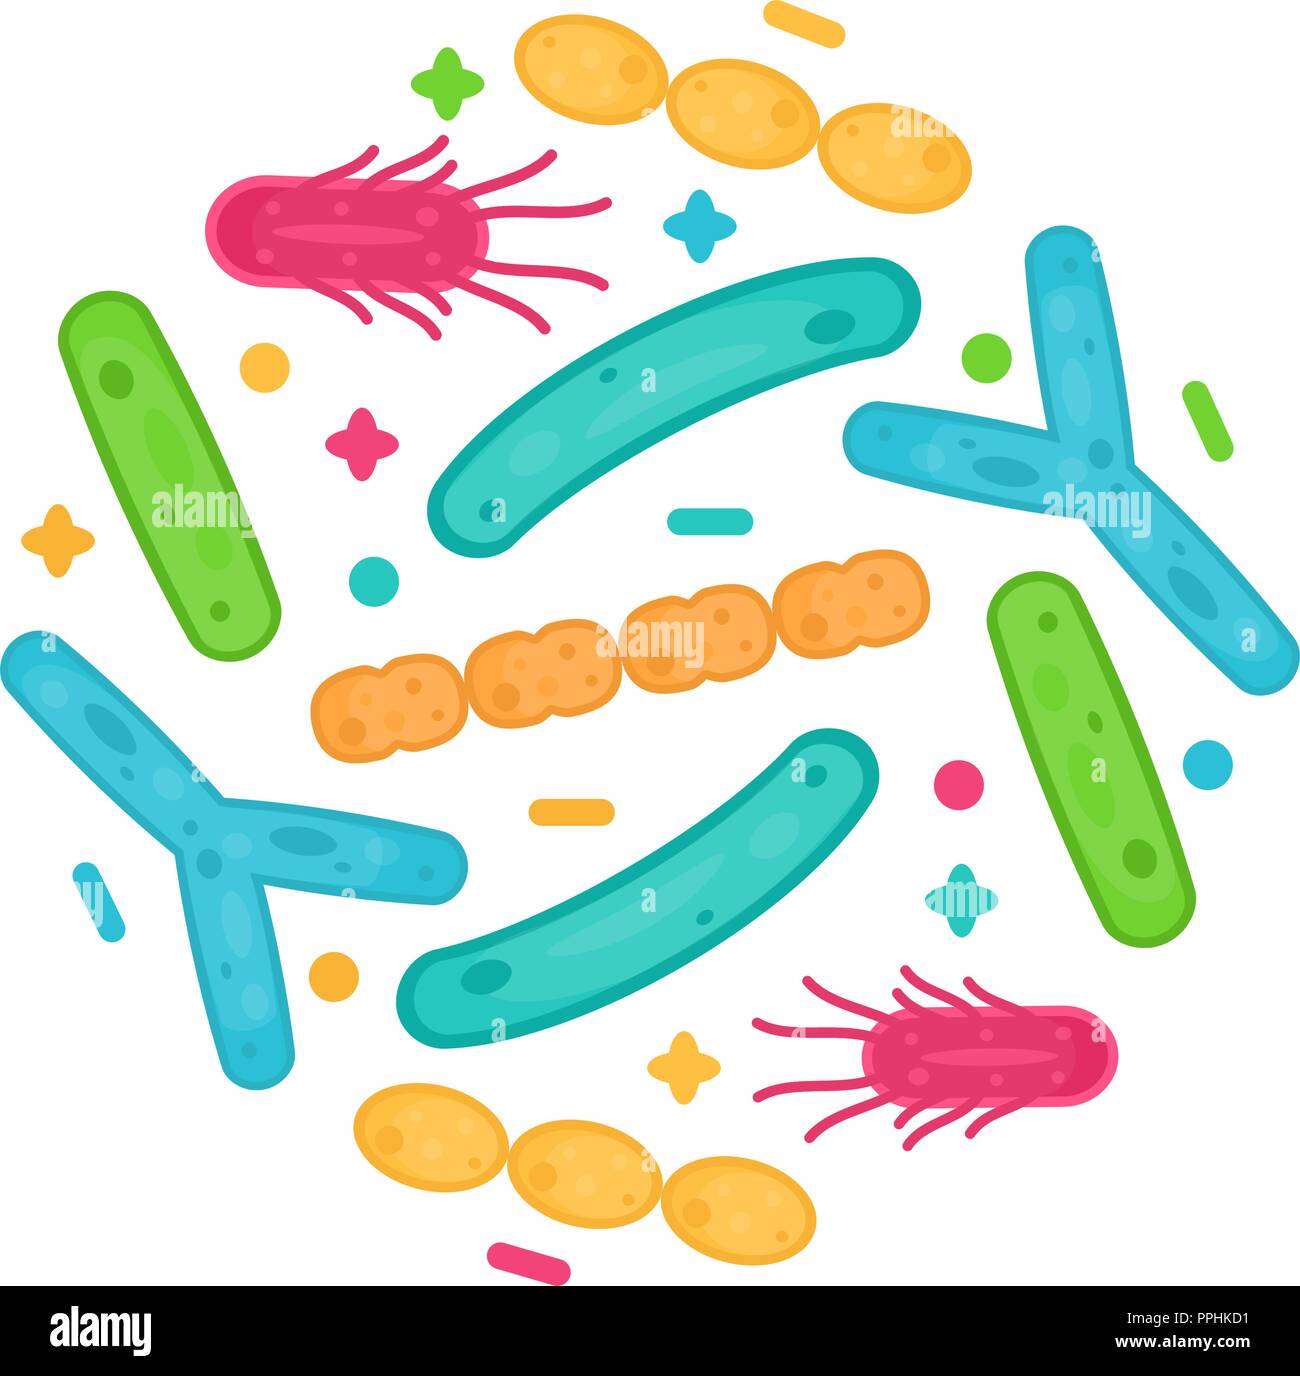 Probiotika Bakterien und Keime Icon Design. Gesunde Ernährung Bestandteil für die menschliche Gesundheit. Stock Vektor